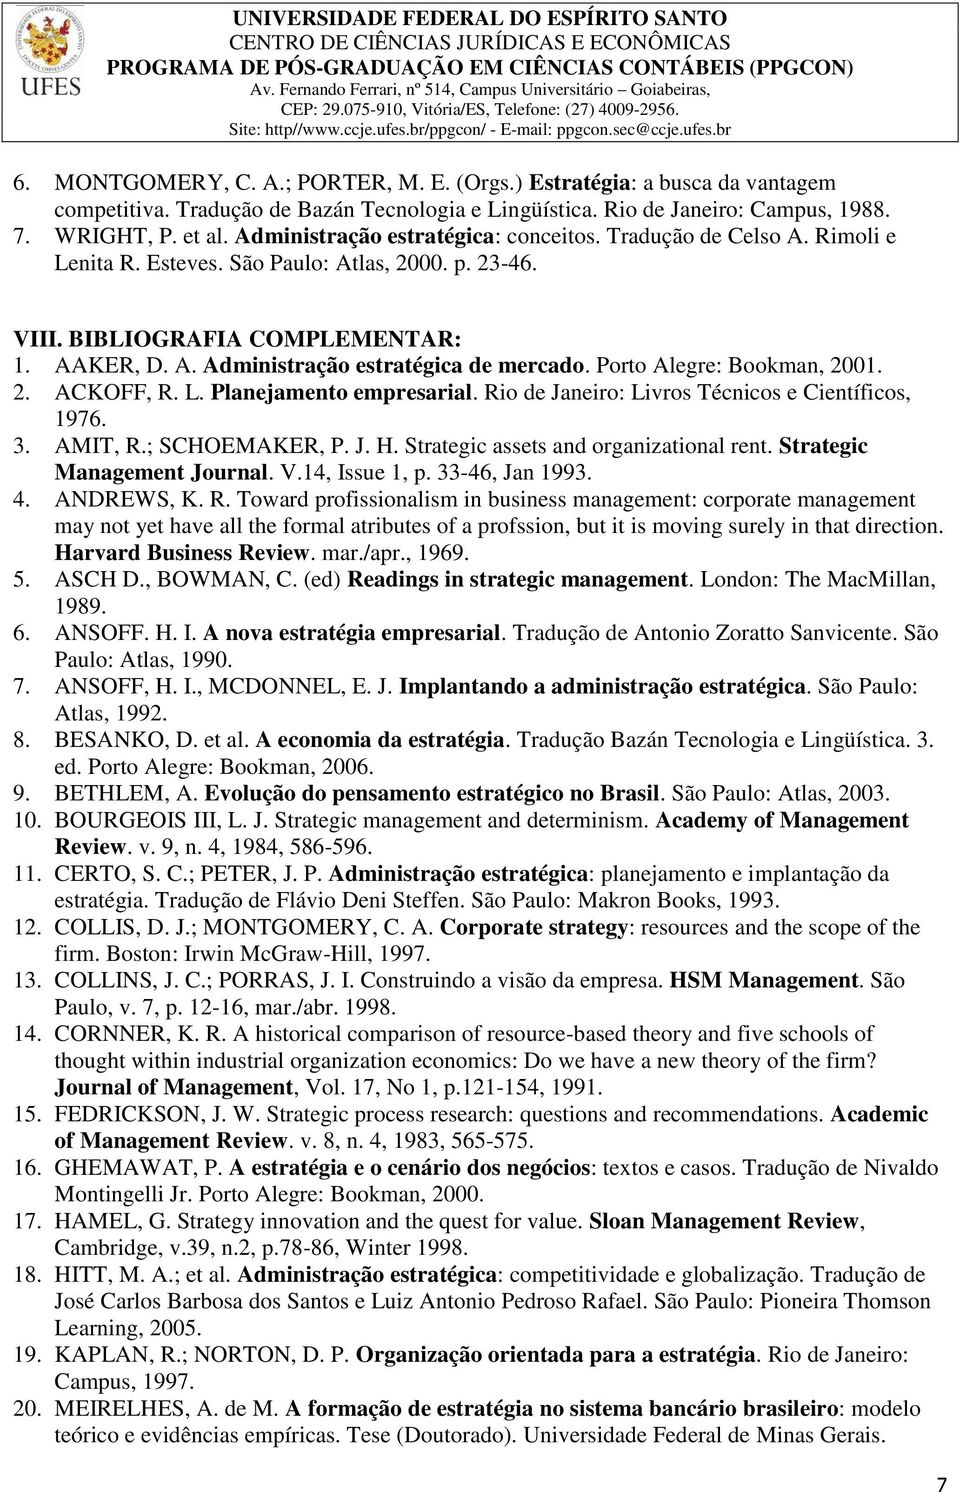 Porto Alegre: Bookman, 2001. 2. ACKOFF, R. L. Planejamento empresarial. Rio de Janeiro: Livros Técnicos e Científicos, 1976. 3. AMIT, R.; SCHOEMAKER, P. J. H. Strategic assets and organizational rent.